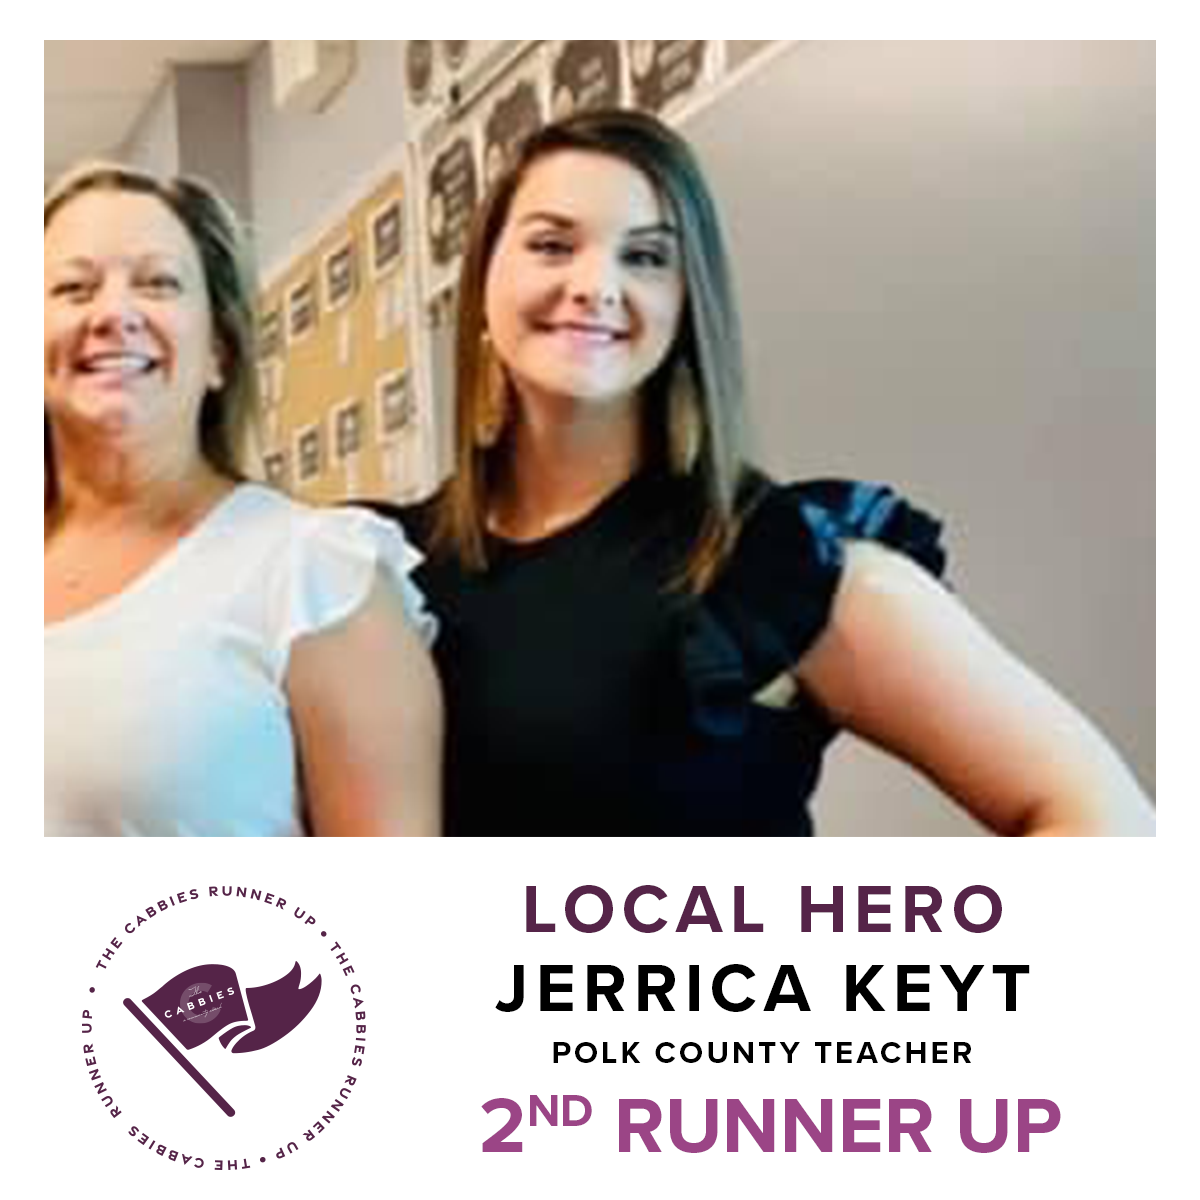 local hero 2nd runner up - Jerrica Keyt